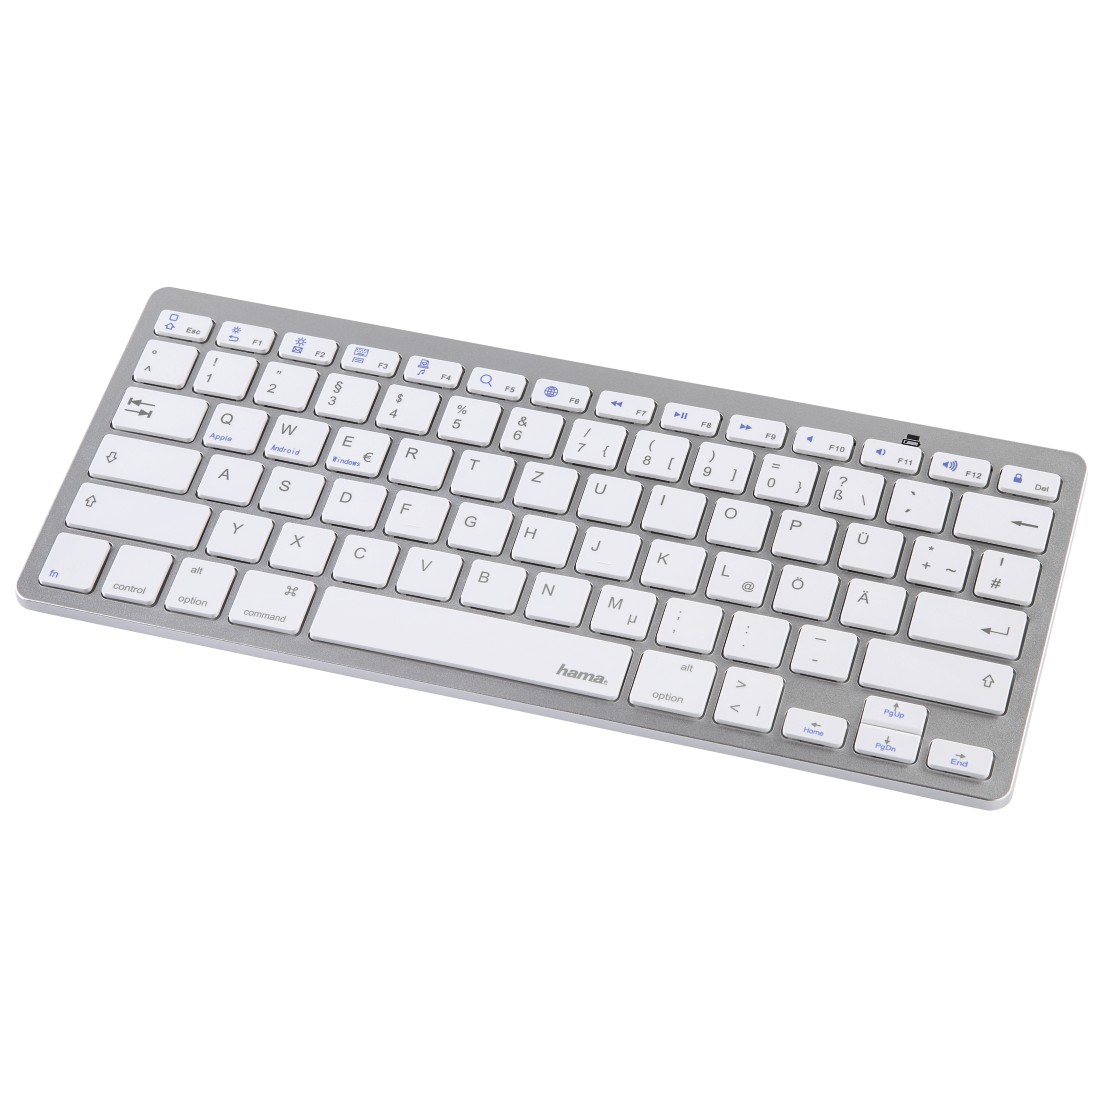 Hama Bluetooth®-Tastatur KEY4ALL X510, Silber/Weiß